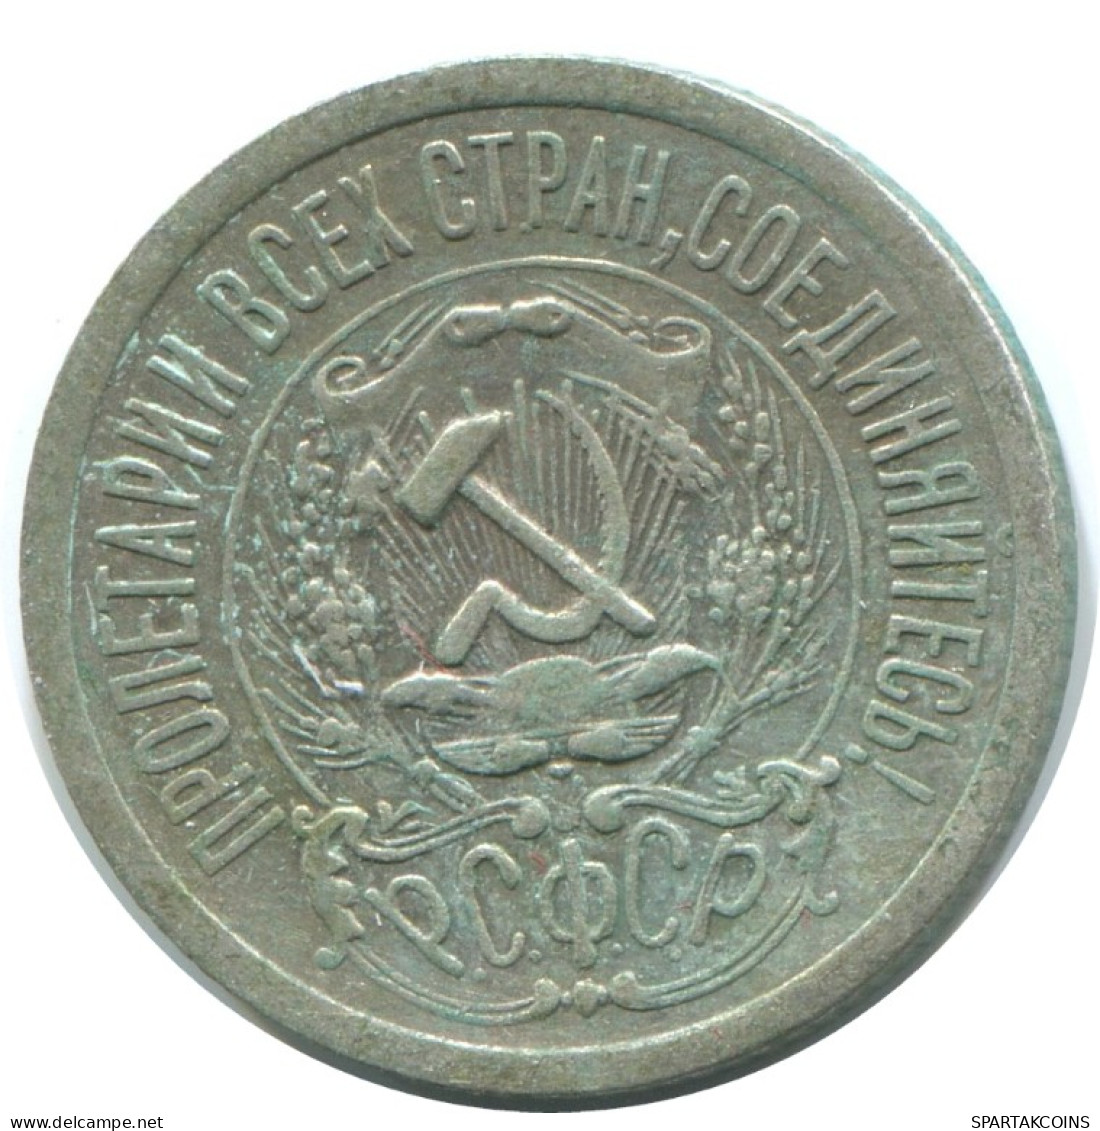 15 KOPEKS 1923 RUSSIA RSFSR SILVER Coin HIGH GRADE #AF037.4.U.A - Russland